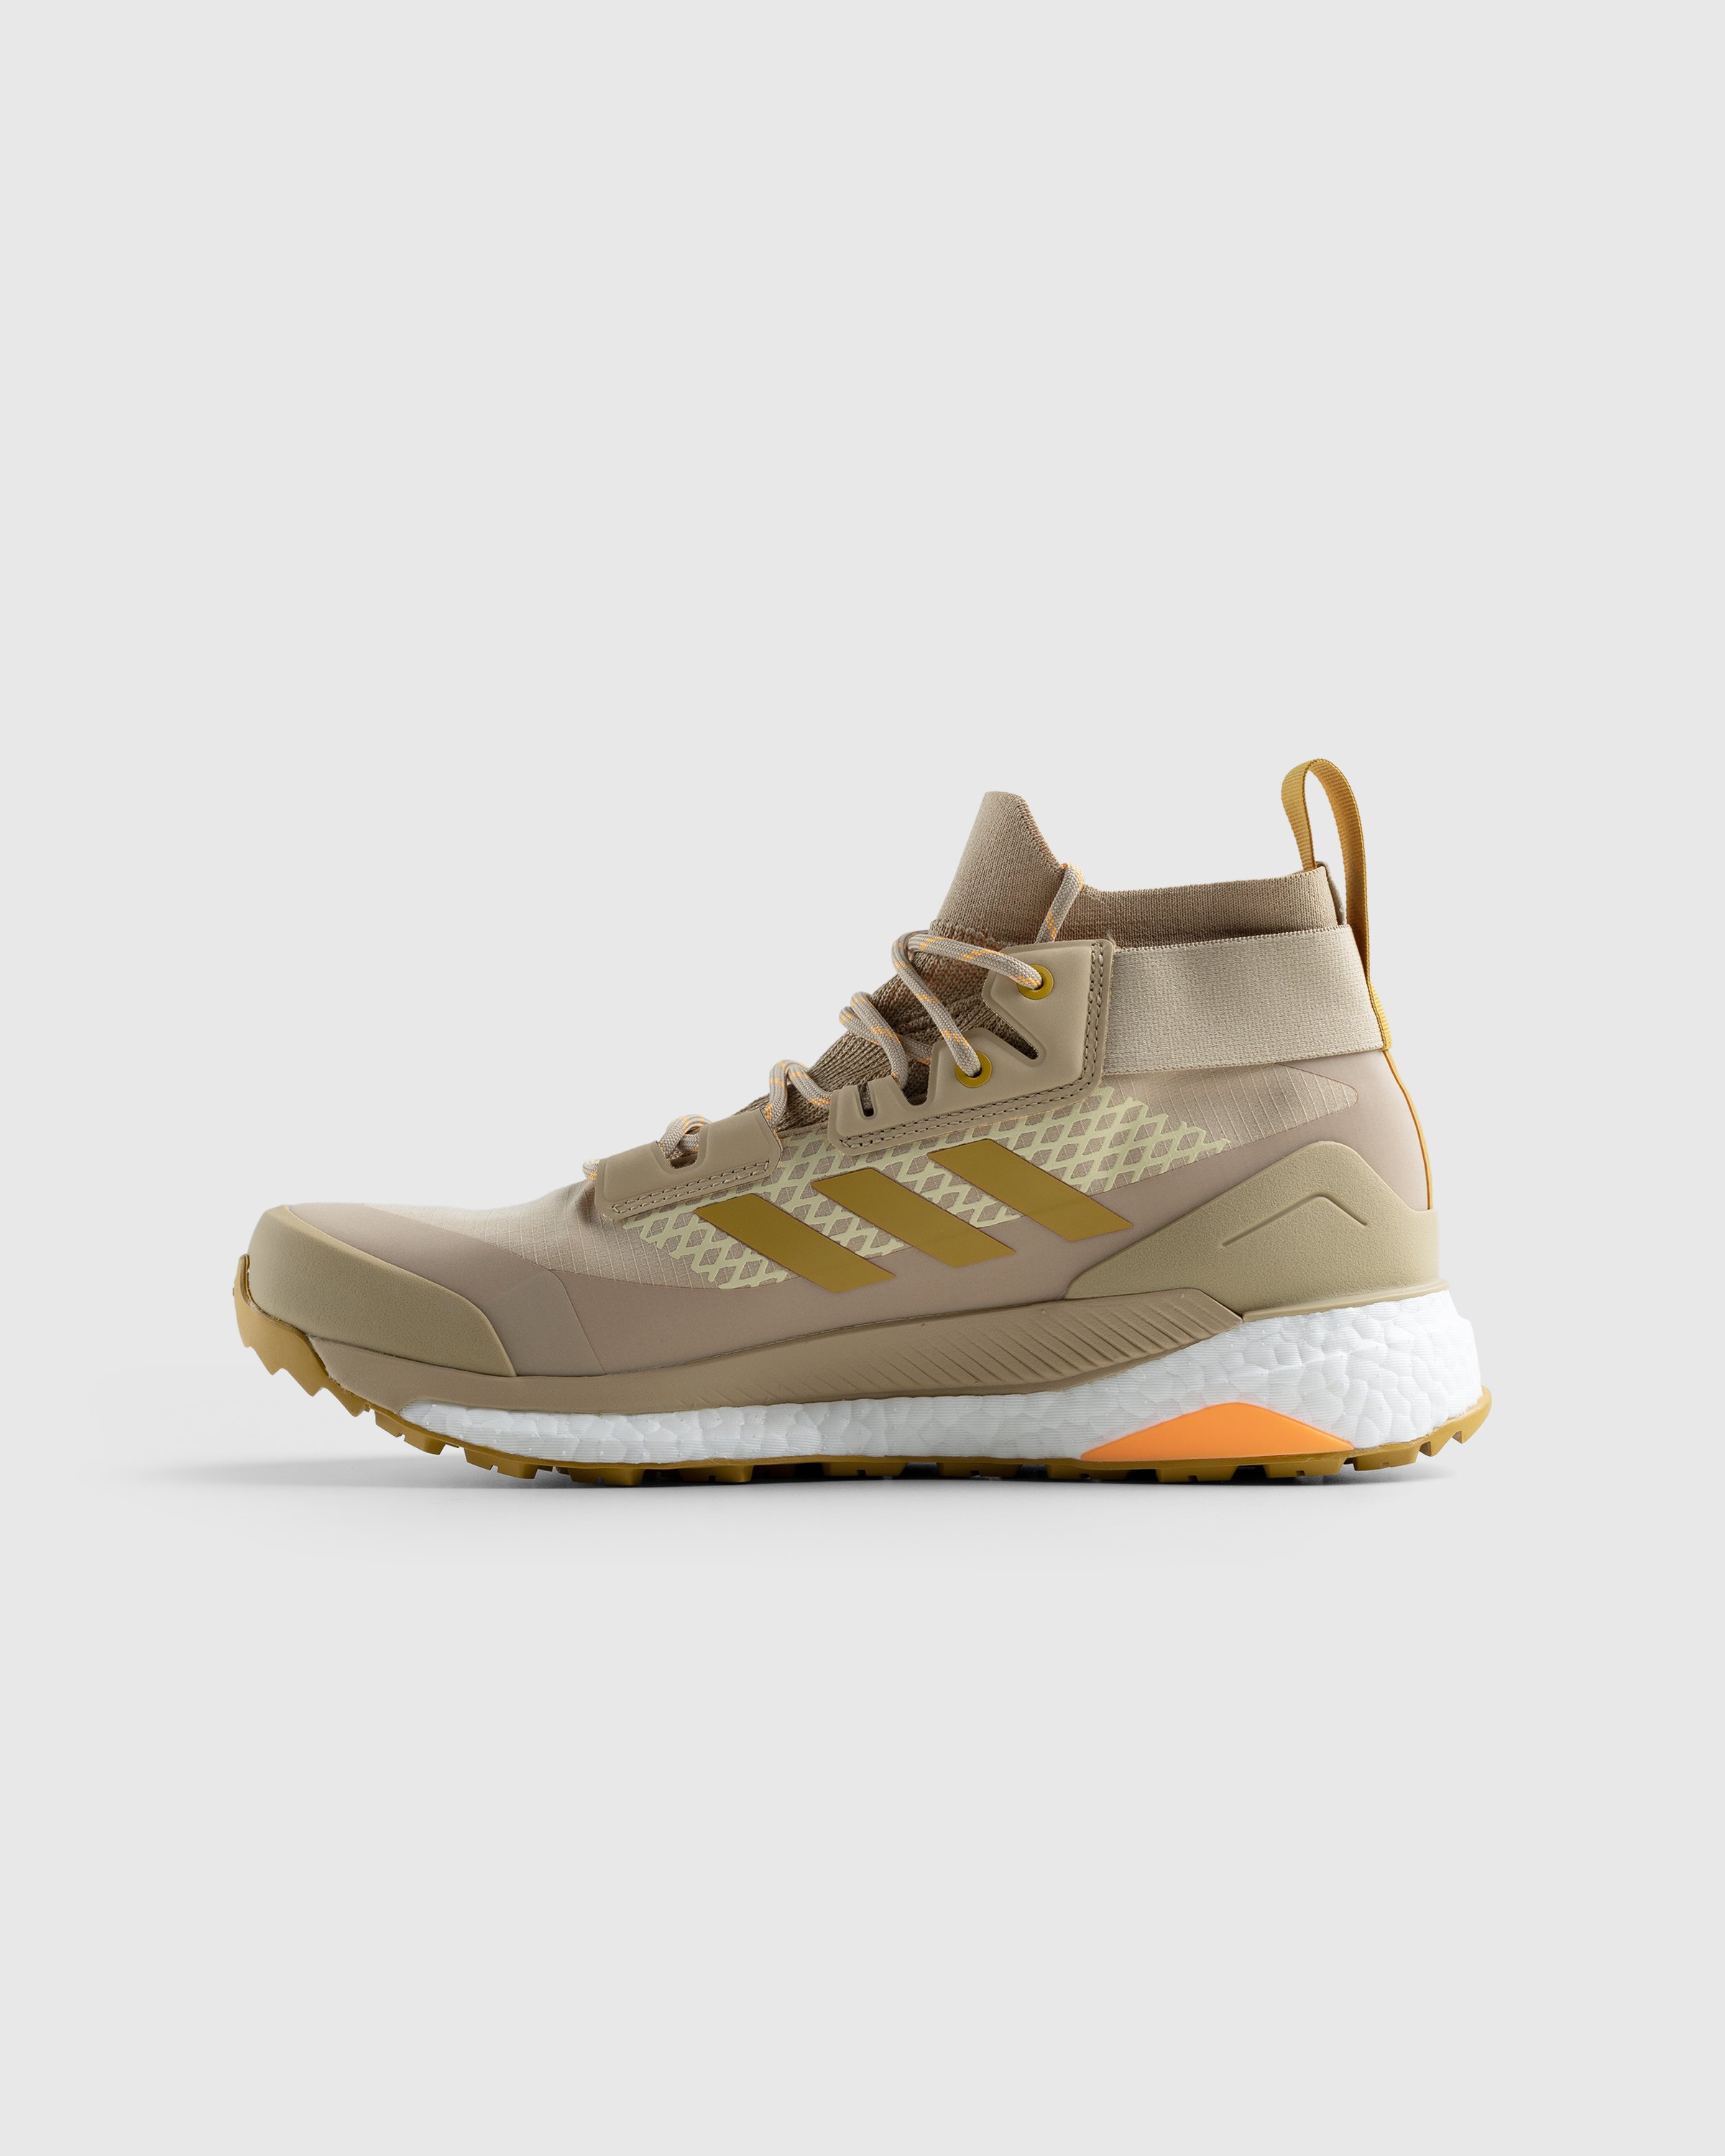 Adidas - Terrex Free Hiker Gore-Tex Beige/Gold - Footwear - Brown - Image 2